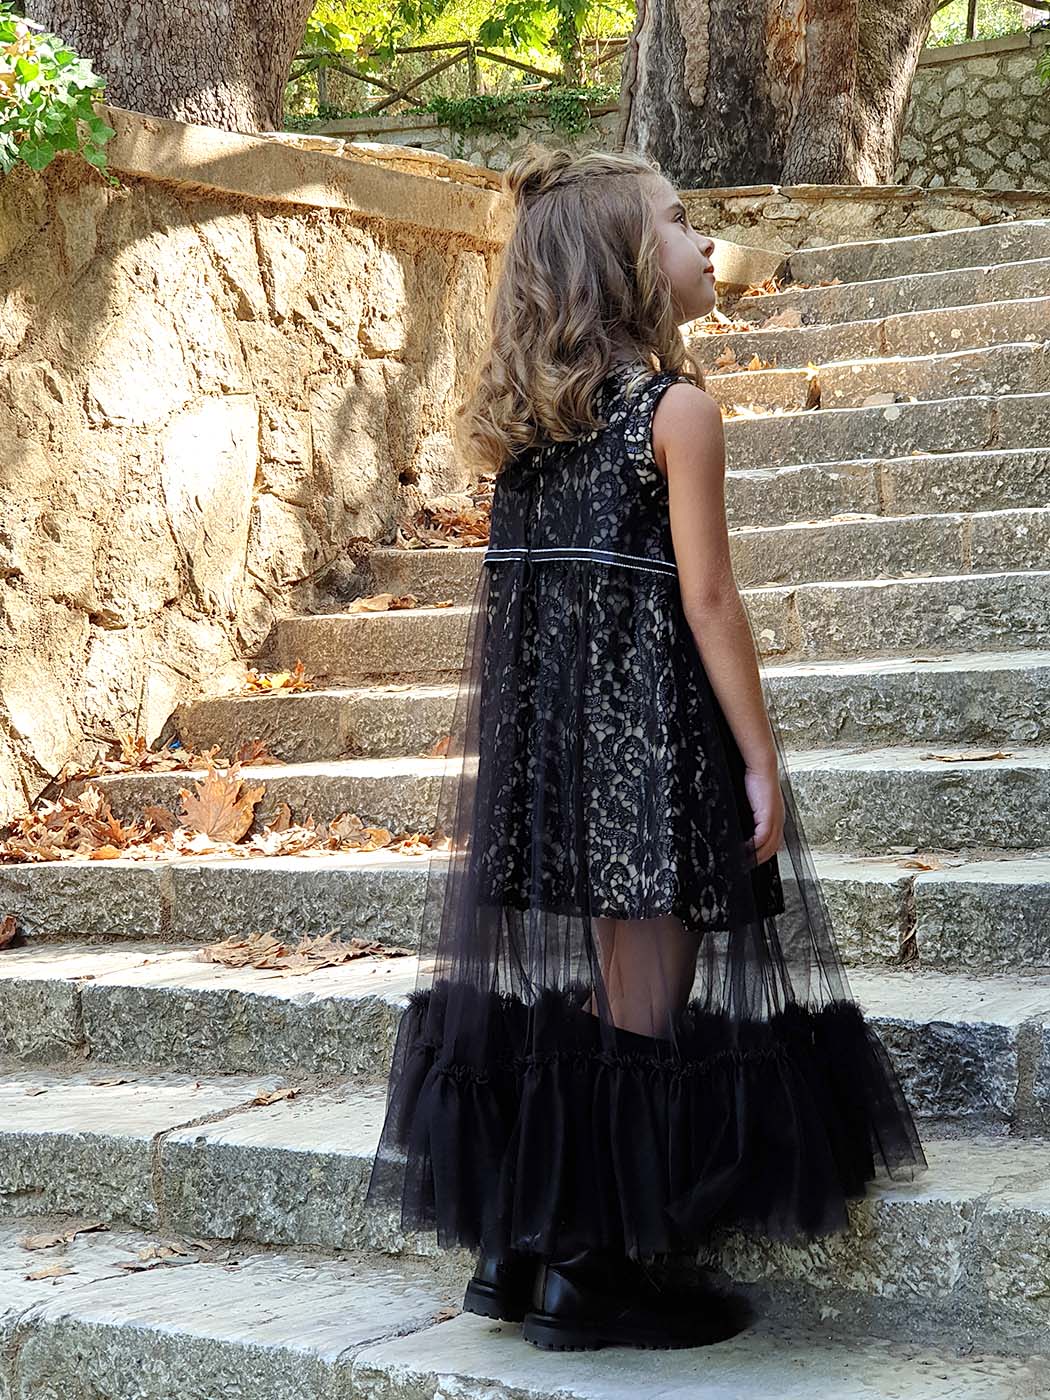 Girl's Lace Dress & Tunic 2pcs - REVECA Black